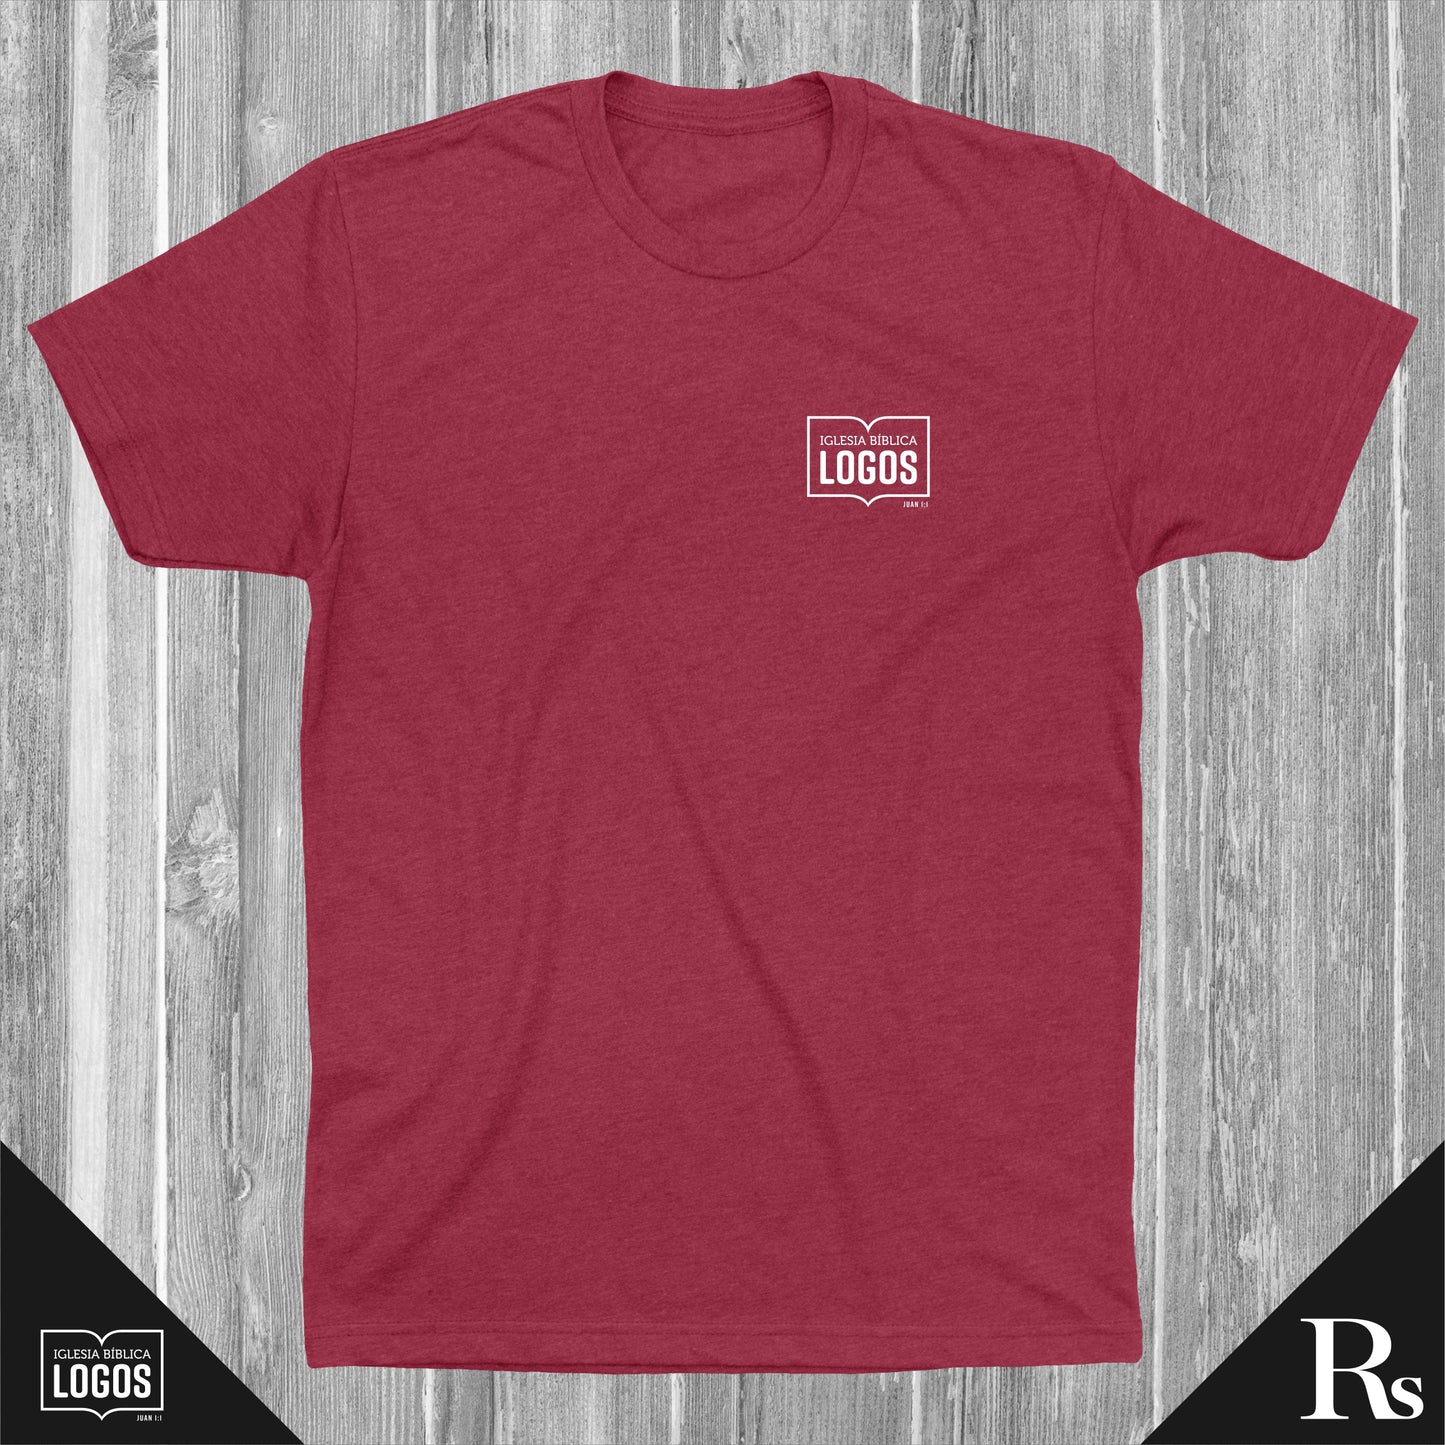 Iglesia Biblica Logos CARDINAL | Rs T-shirts